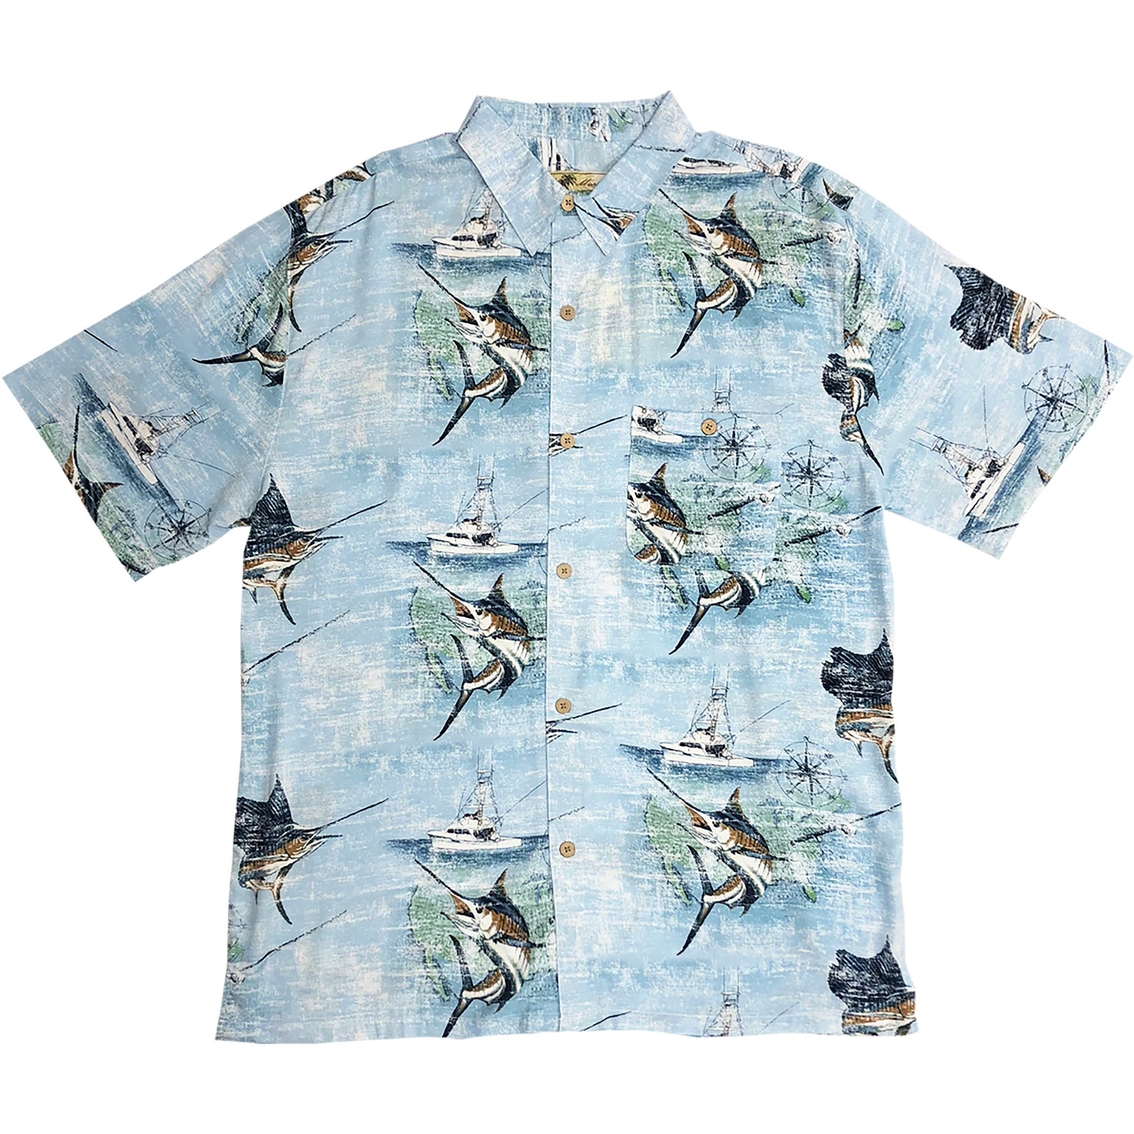 Joe Marlin Nautical Marlin Shirt, Shirts